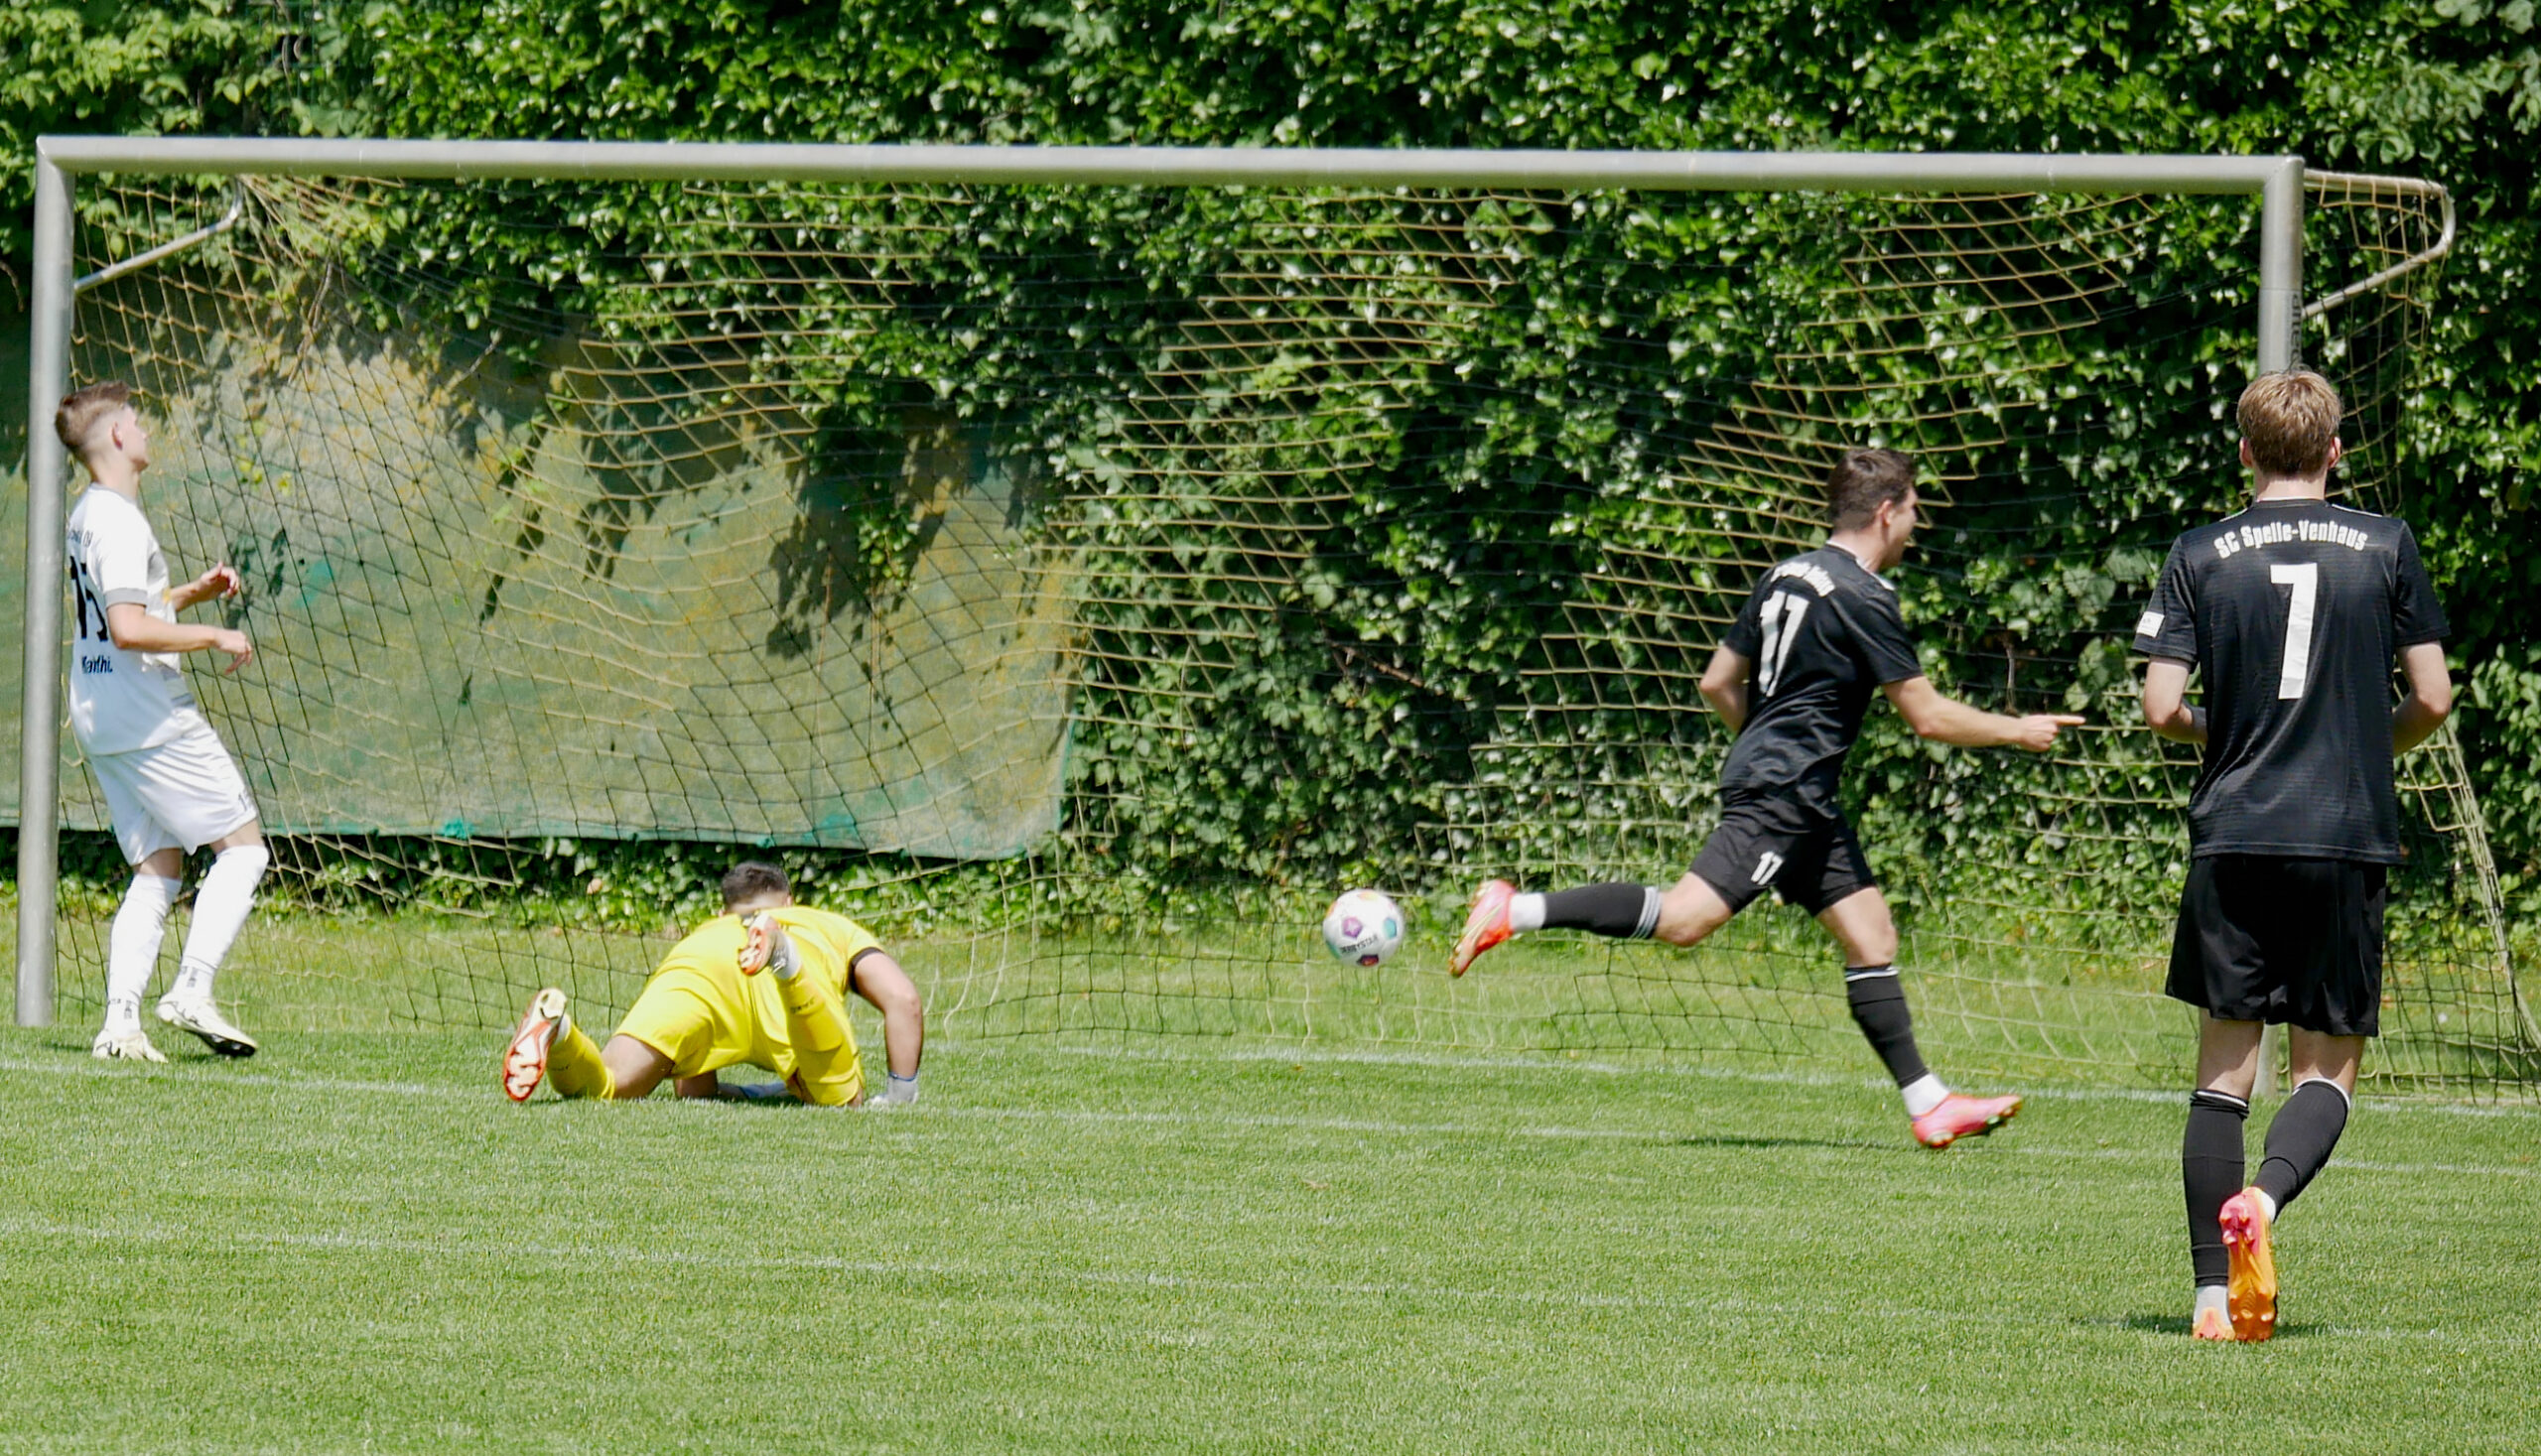 Marvin Kehl erzielte den Treffer zum 1:1.
Foto: Uli Mentrup